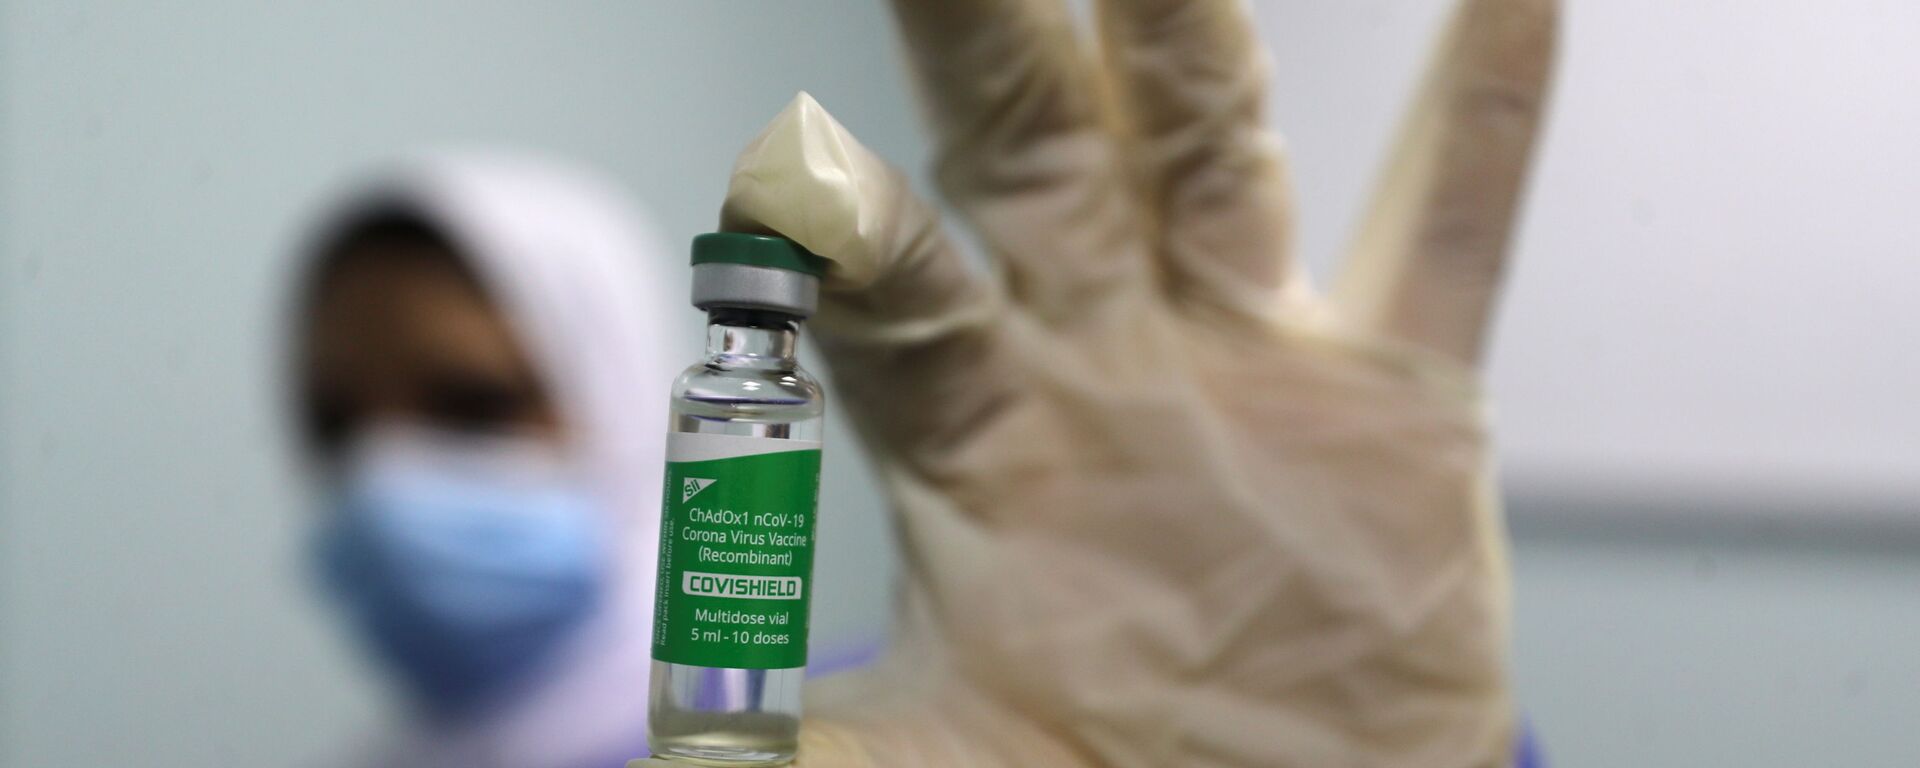 بدء تطعيم واسع النطاق في مصر ضد فيروس كورونا (كوفيد-19)، القاهرة، 4 مارس 2021 - سبوتنيك عربي, 1920, 16.03.2021